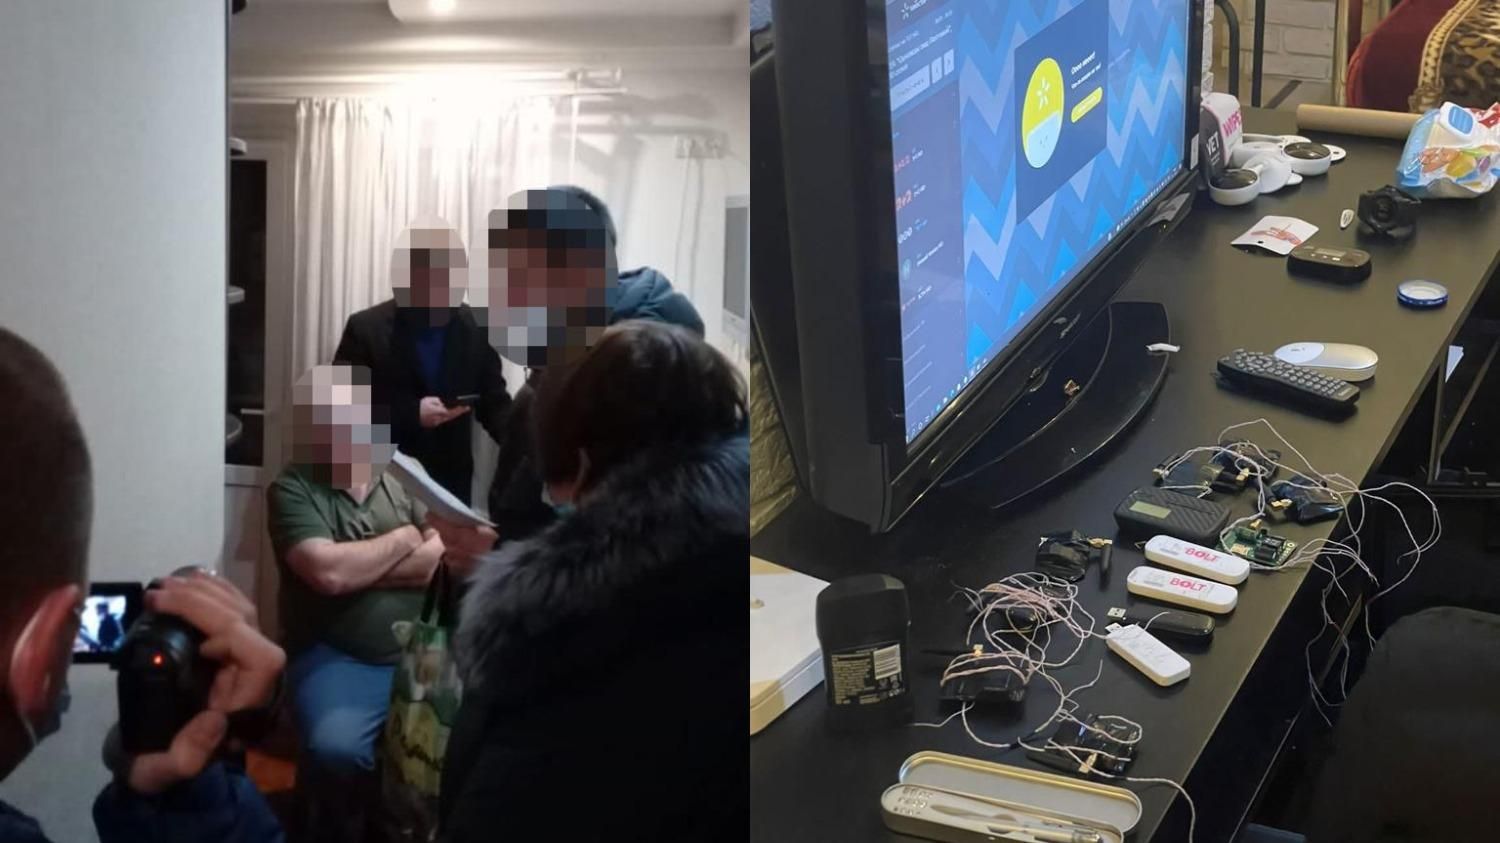 Незаконно стежили за людьми: викрили детективну агенцію, яку організував експоліцейський - Україна новини - 24 Канал